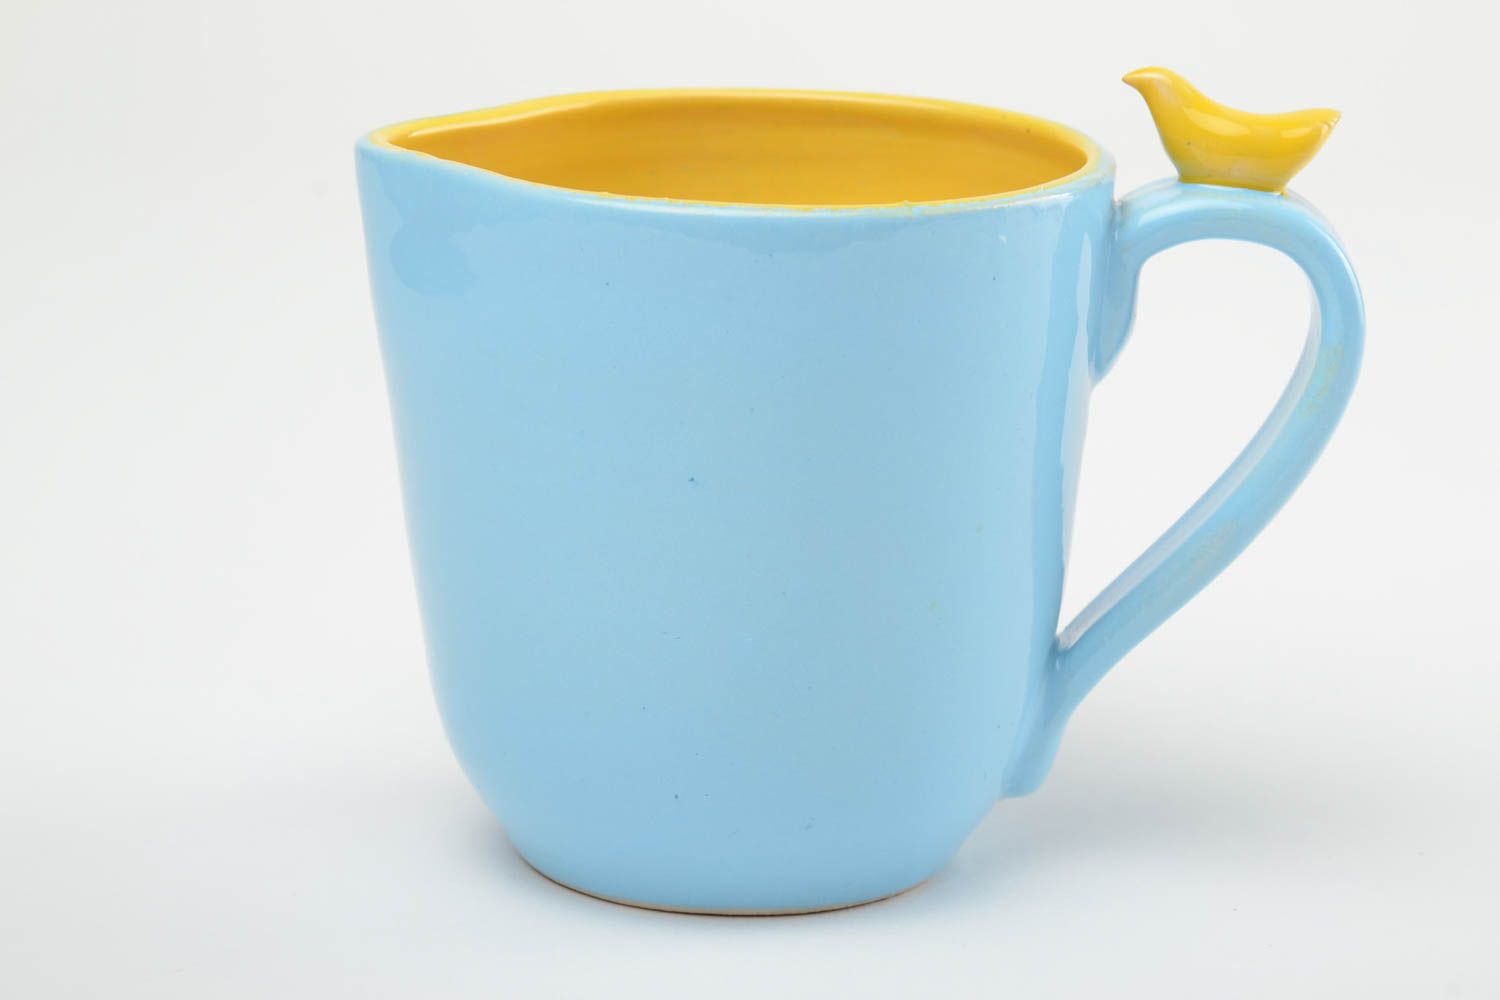 Глиняная чашка ручной работы расписанная глазурью и эмалью 400 мл желто-голубая фото 3